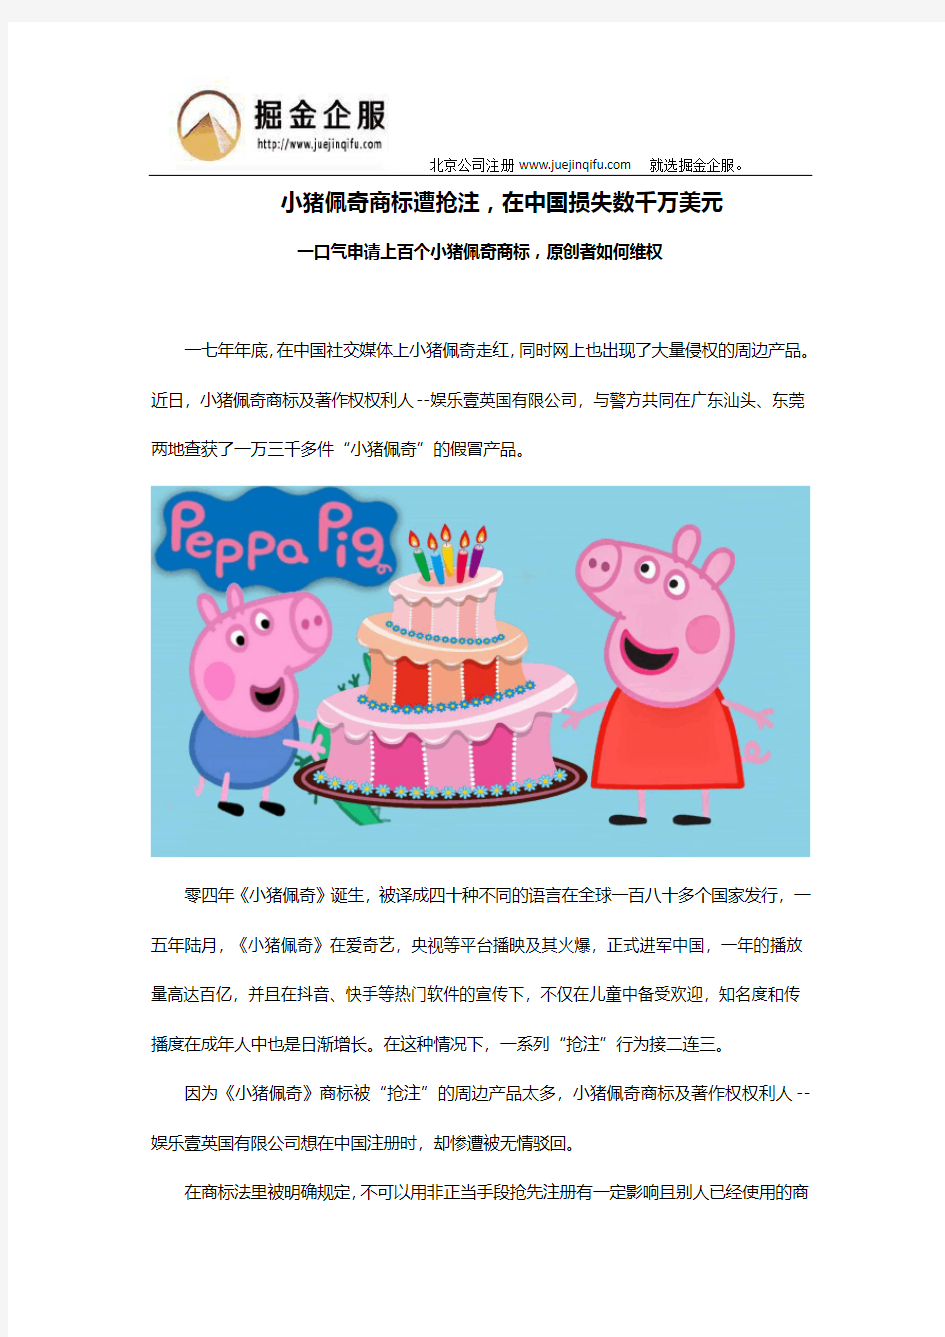 小猪佩奇商标遭抢注,在中国损失数千万美元